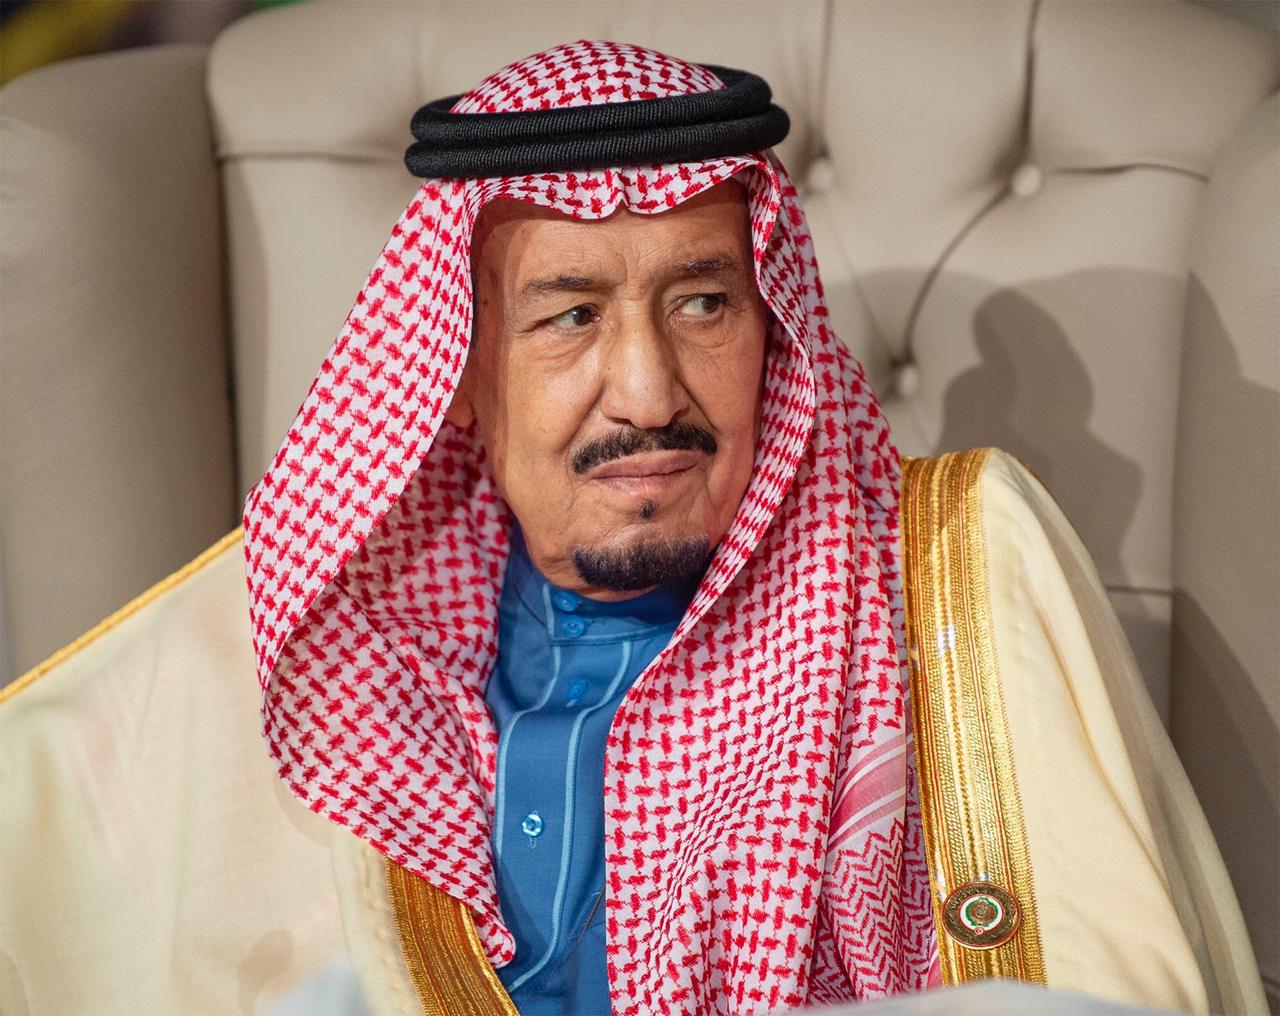 الملك سلمان وحلم الوحدة العربية .. قاموس سياسي يحتاجه العرب